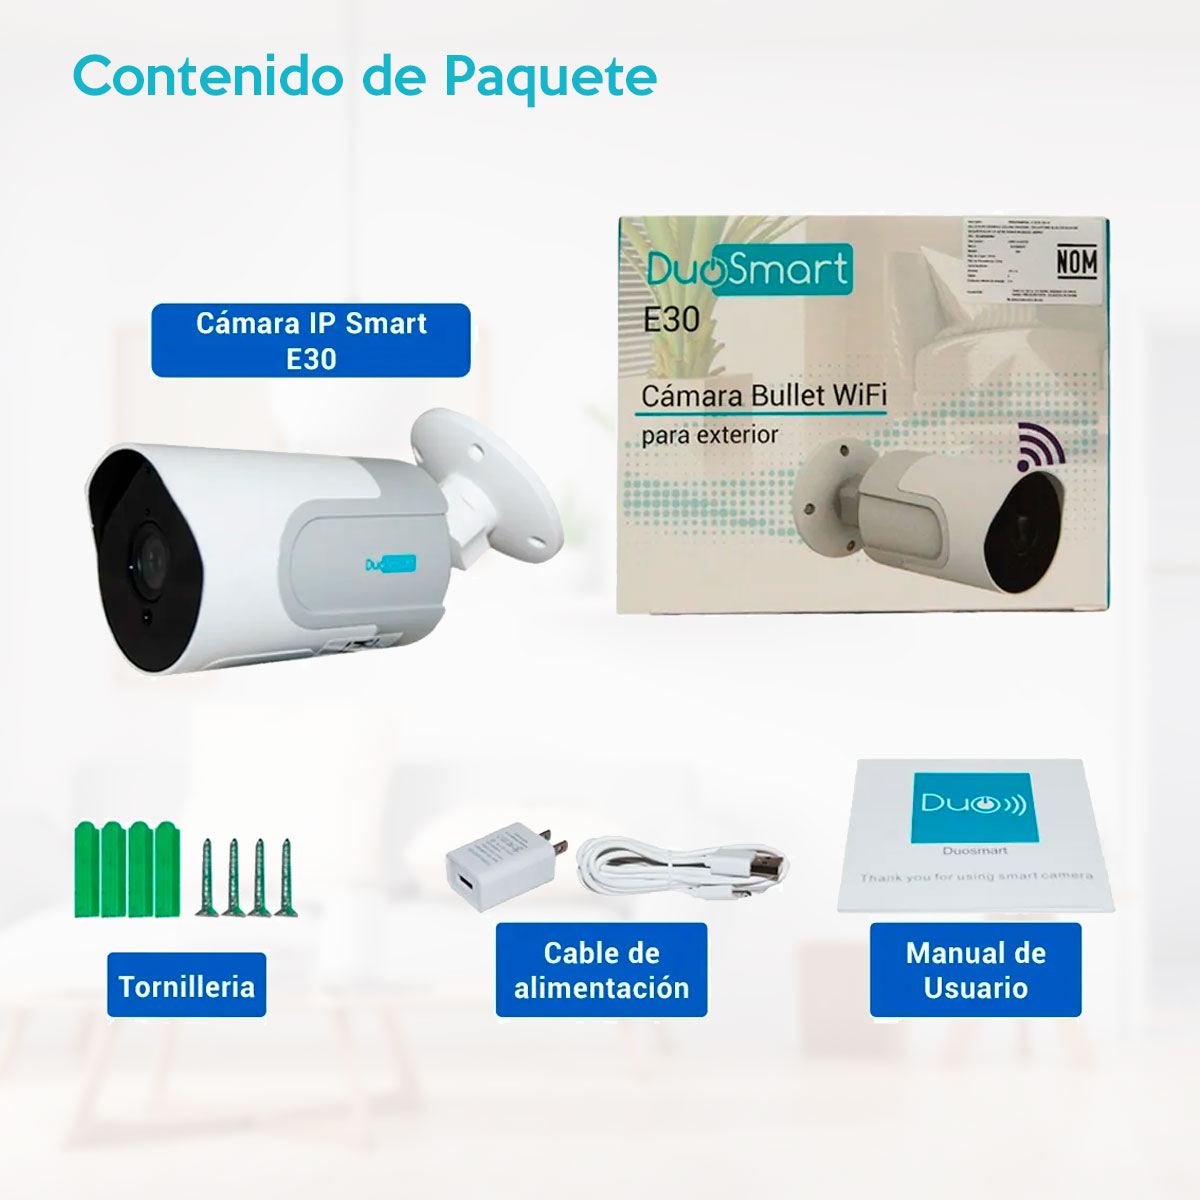 Wi-Fi Cámara exterior tipo bala 1080p Duosmart E30 compatible con Alexa/Google/Tuya